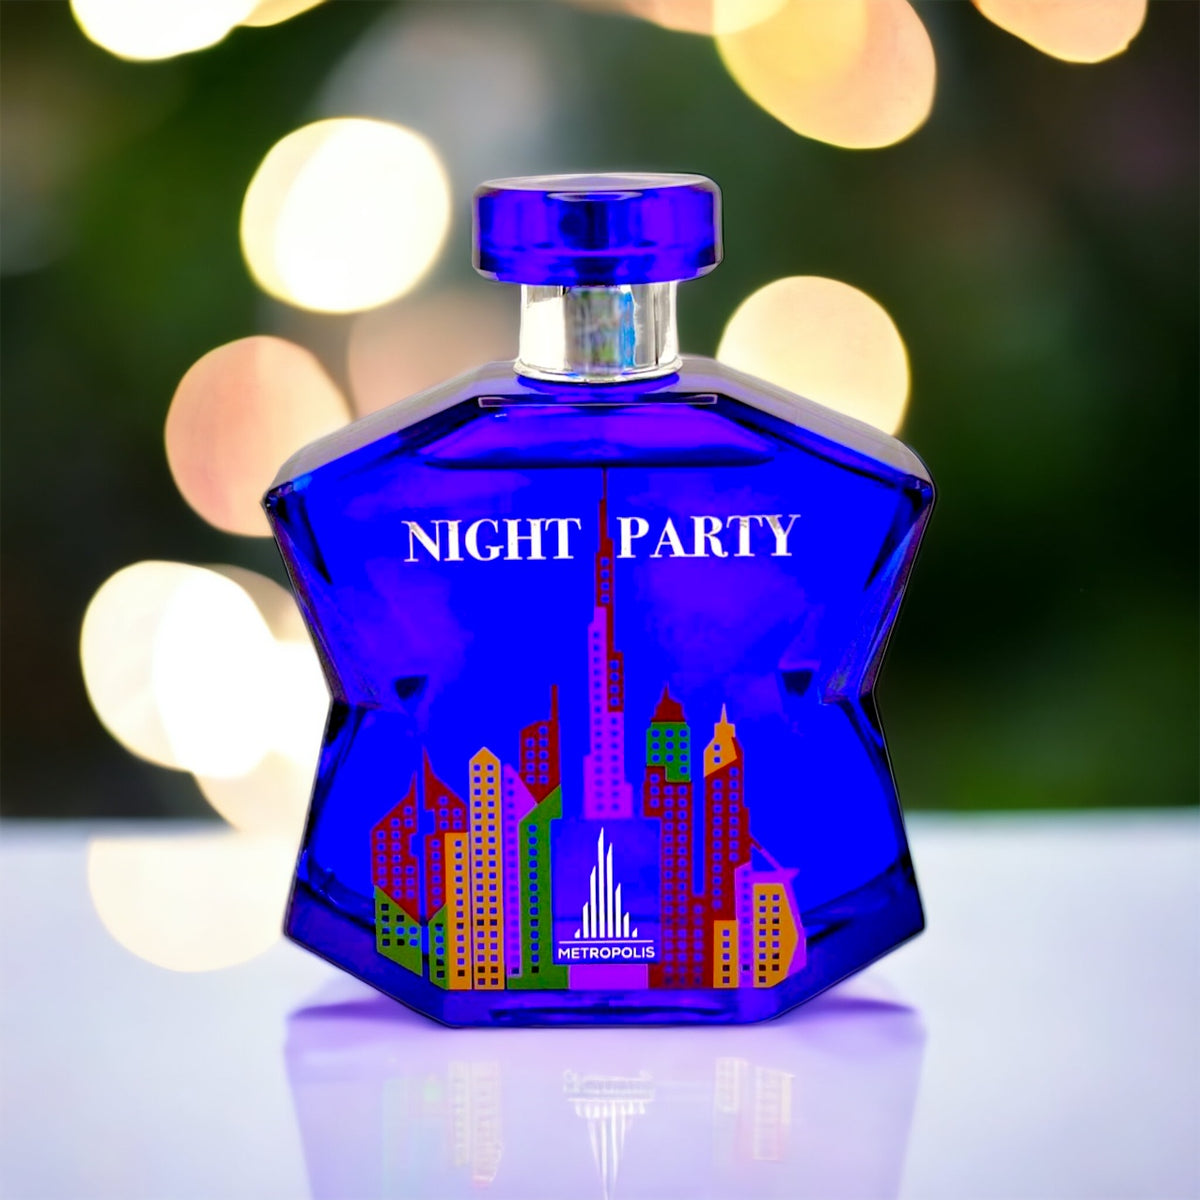 Night Party By Metropolis Eau de Parfum 3.4 oz Unisex